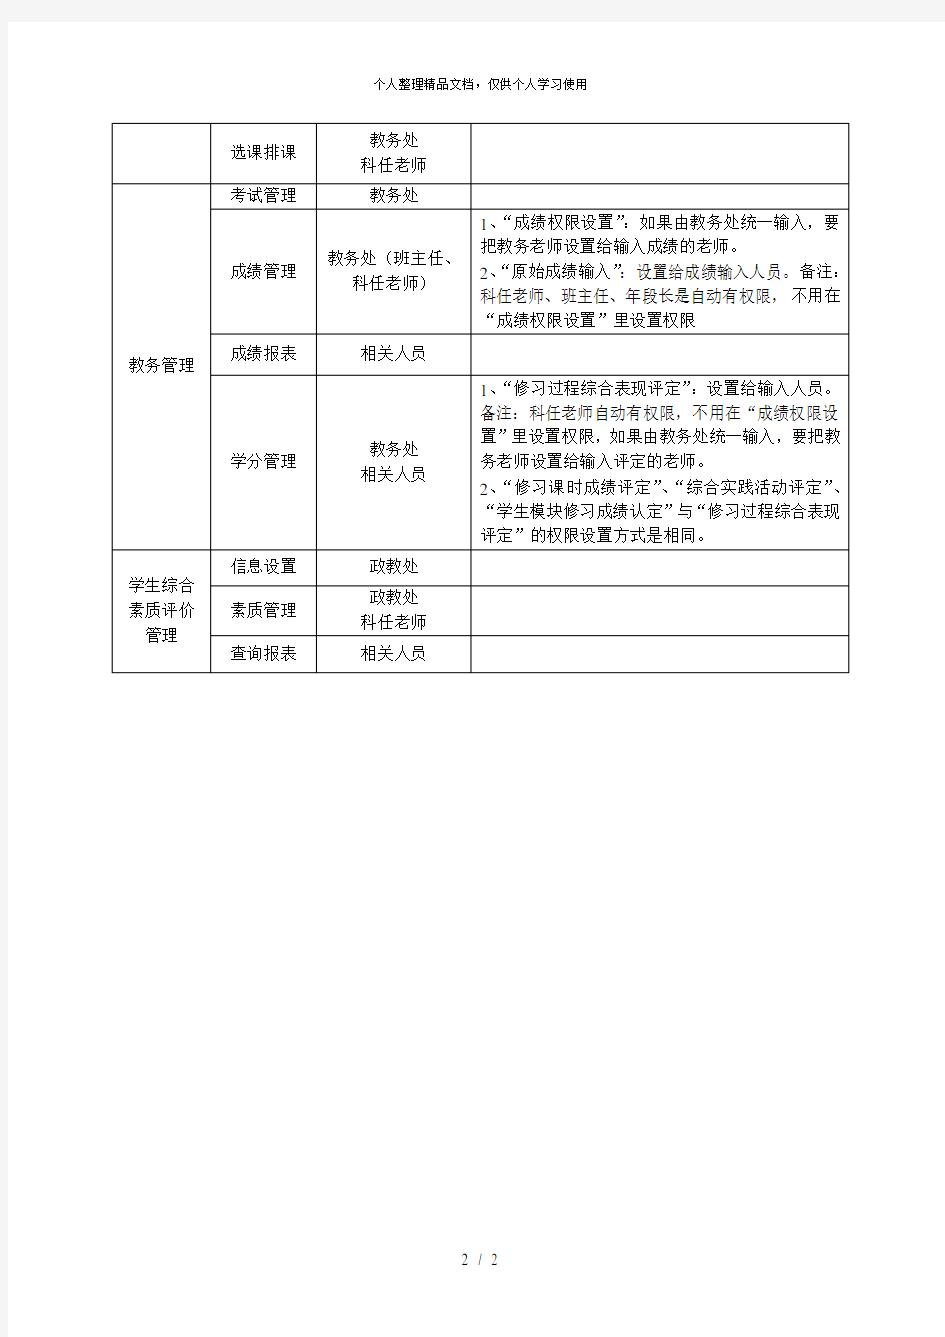 福建省普通高中新课程管理系统